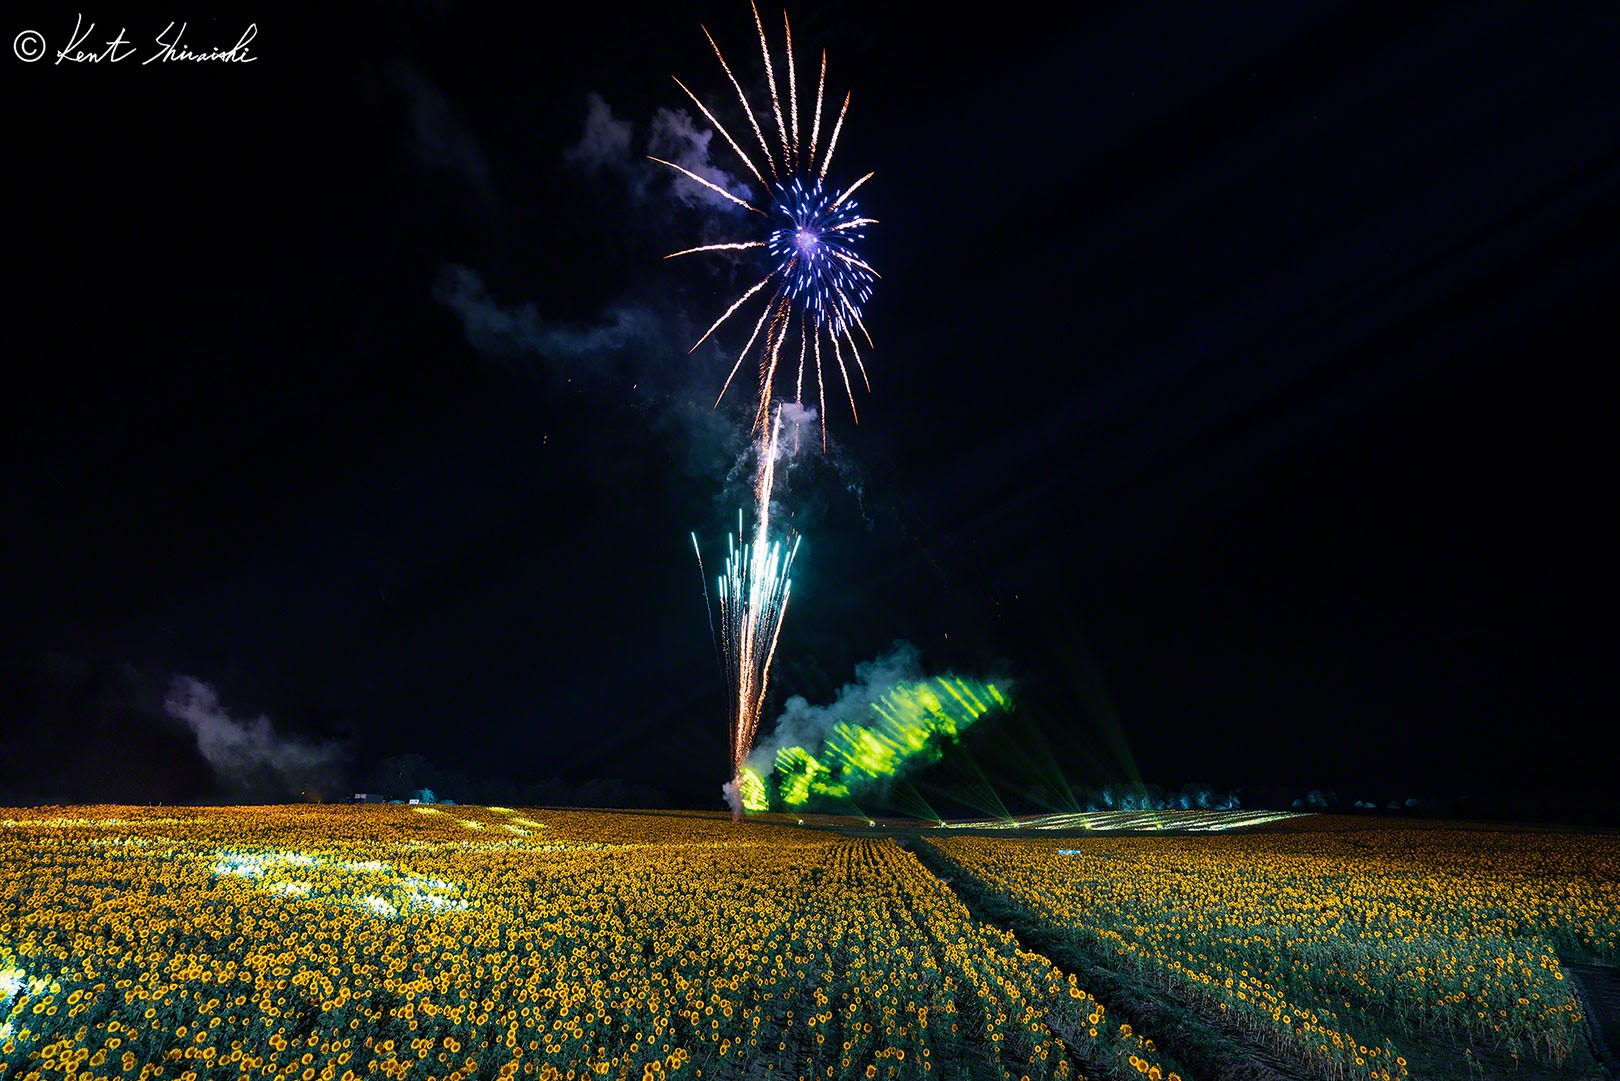 北竜町のひまわり畑 The Illuminated Sunflower And Fireworks Kent Shiraishi Photo Blog